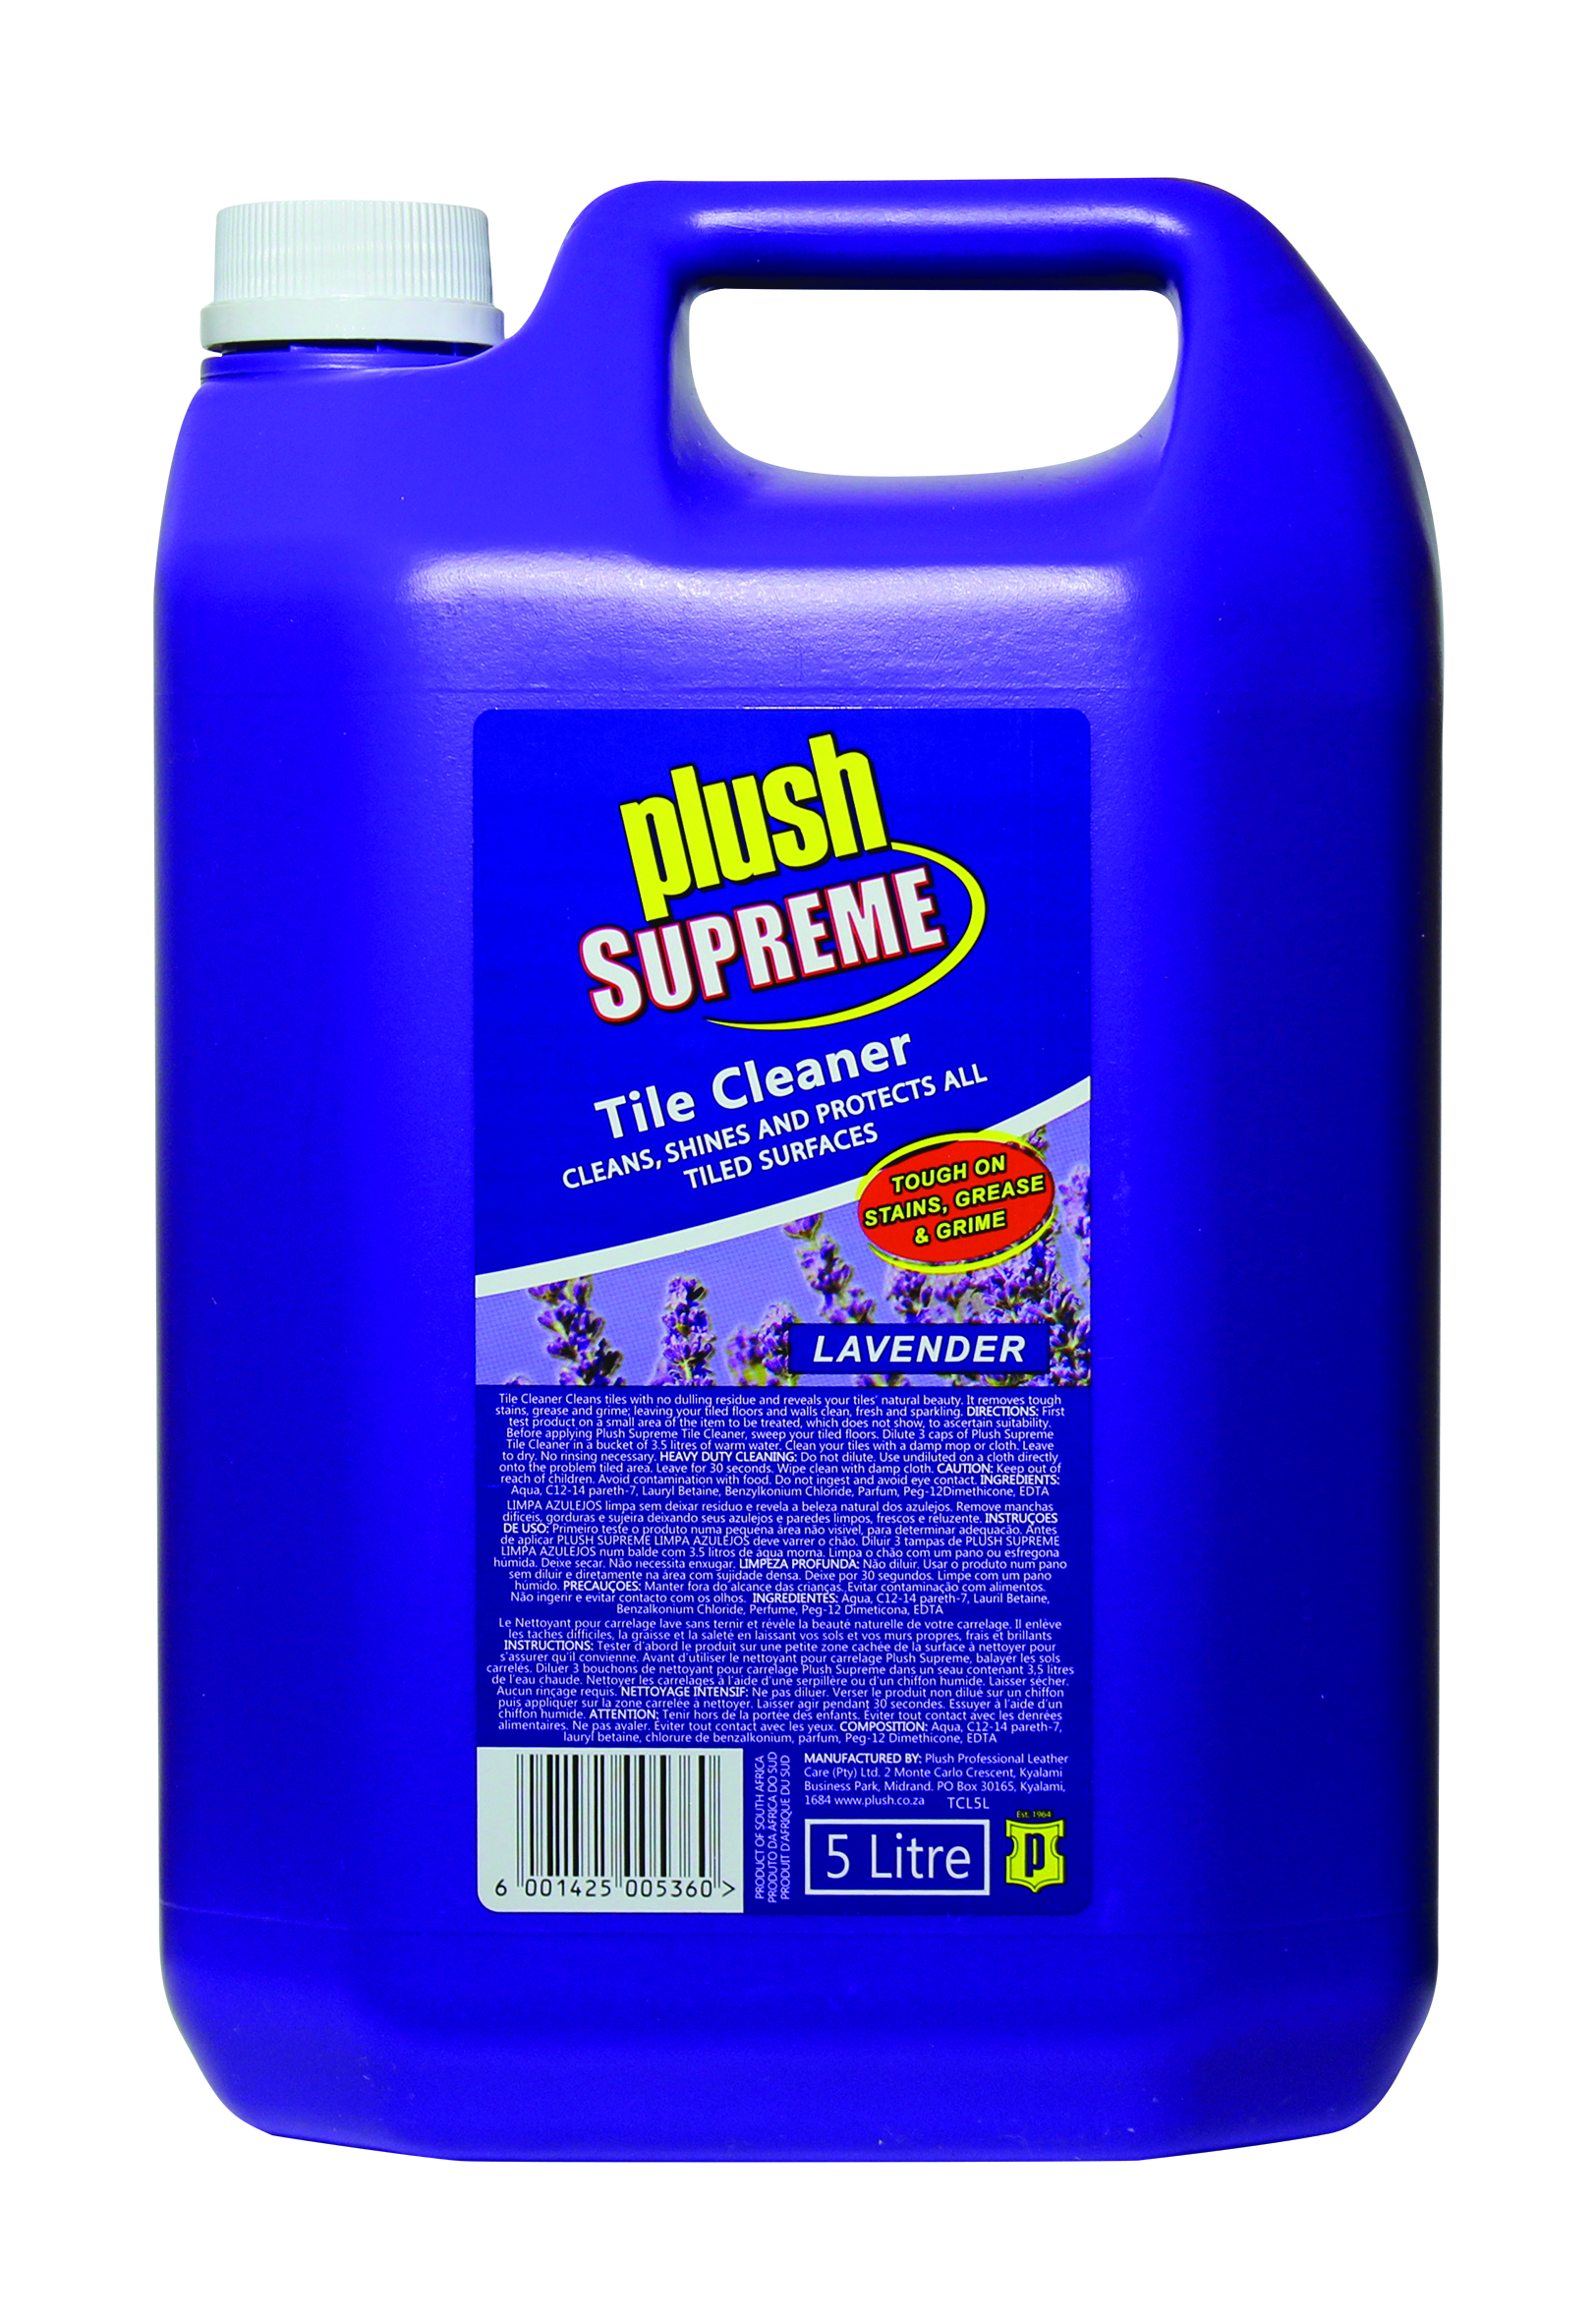 Plush Supreme Tile Cleaner - Lavender 5L